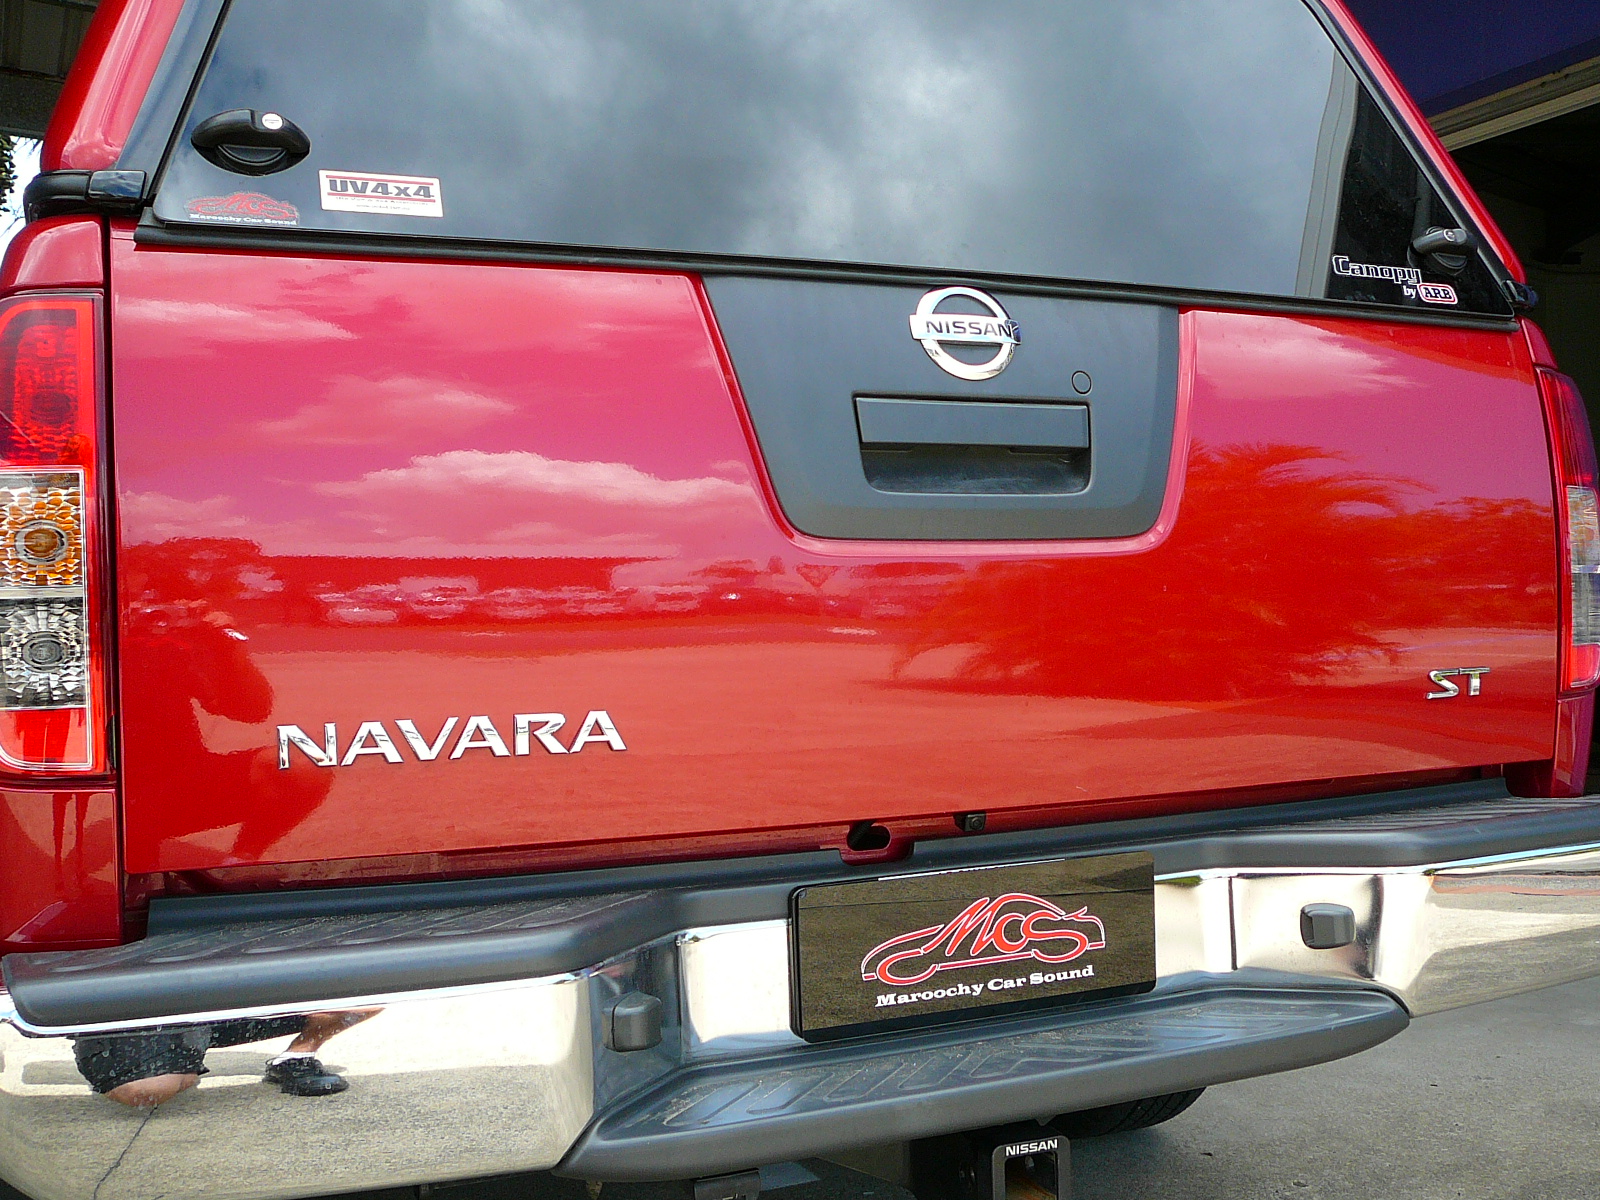 Nissan Navara D40 2012, Pioneer AVH-X8650BT & Reverse Camera